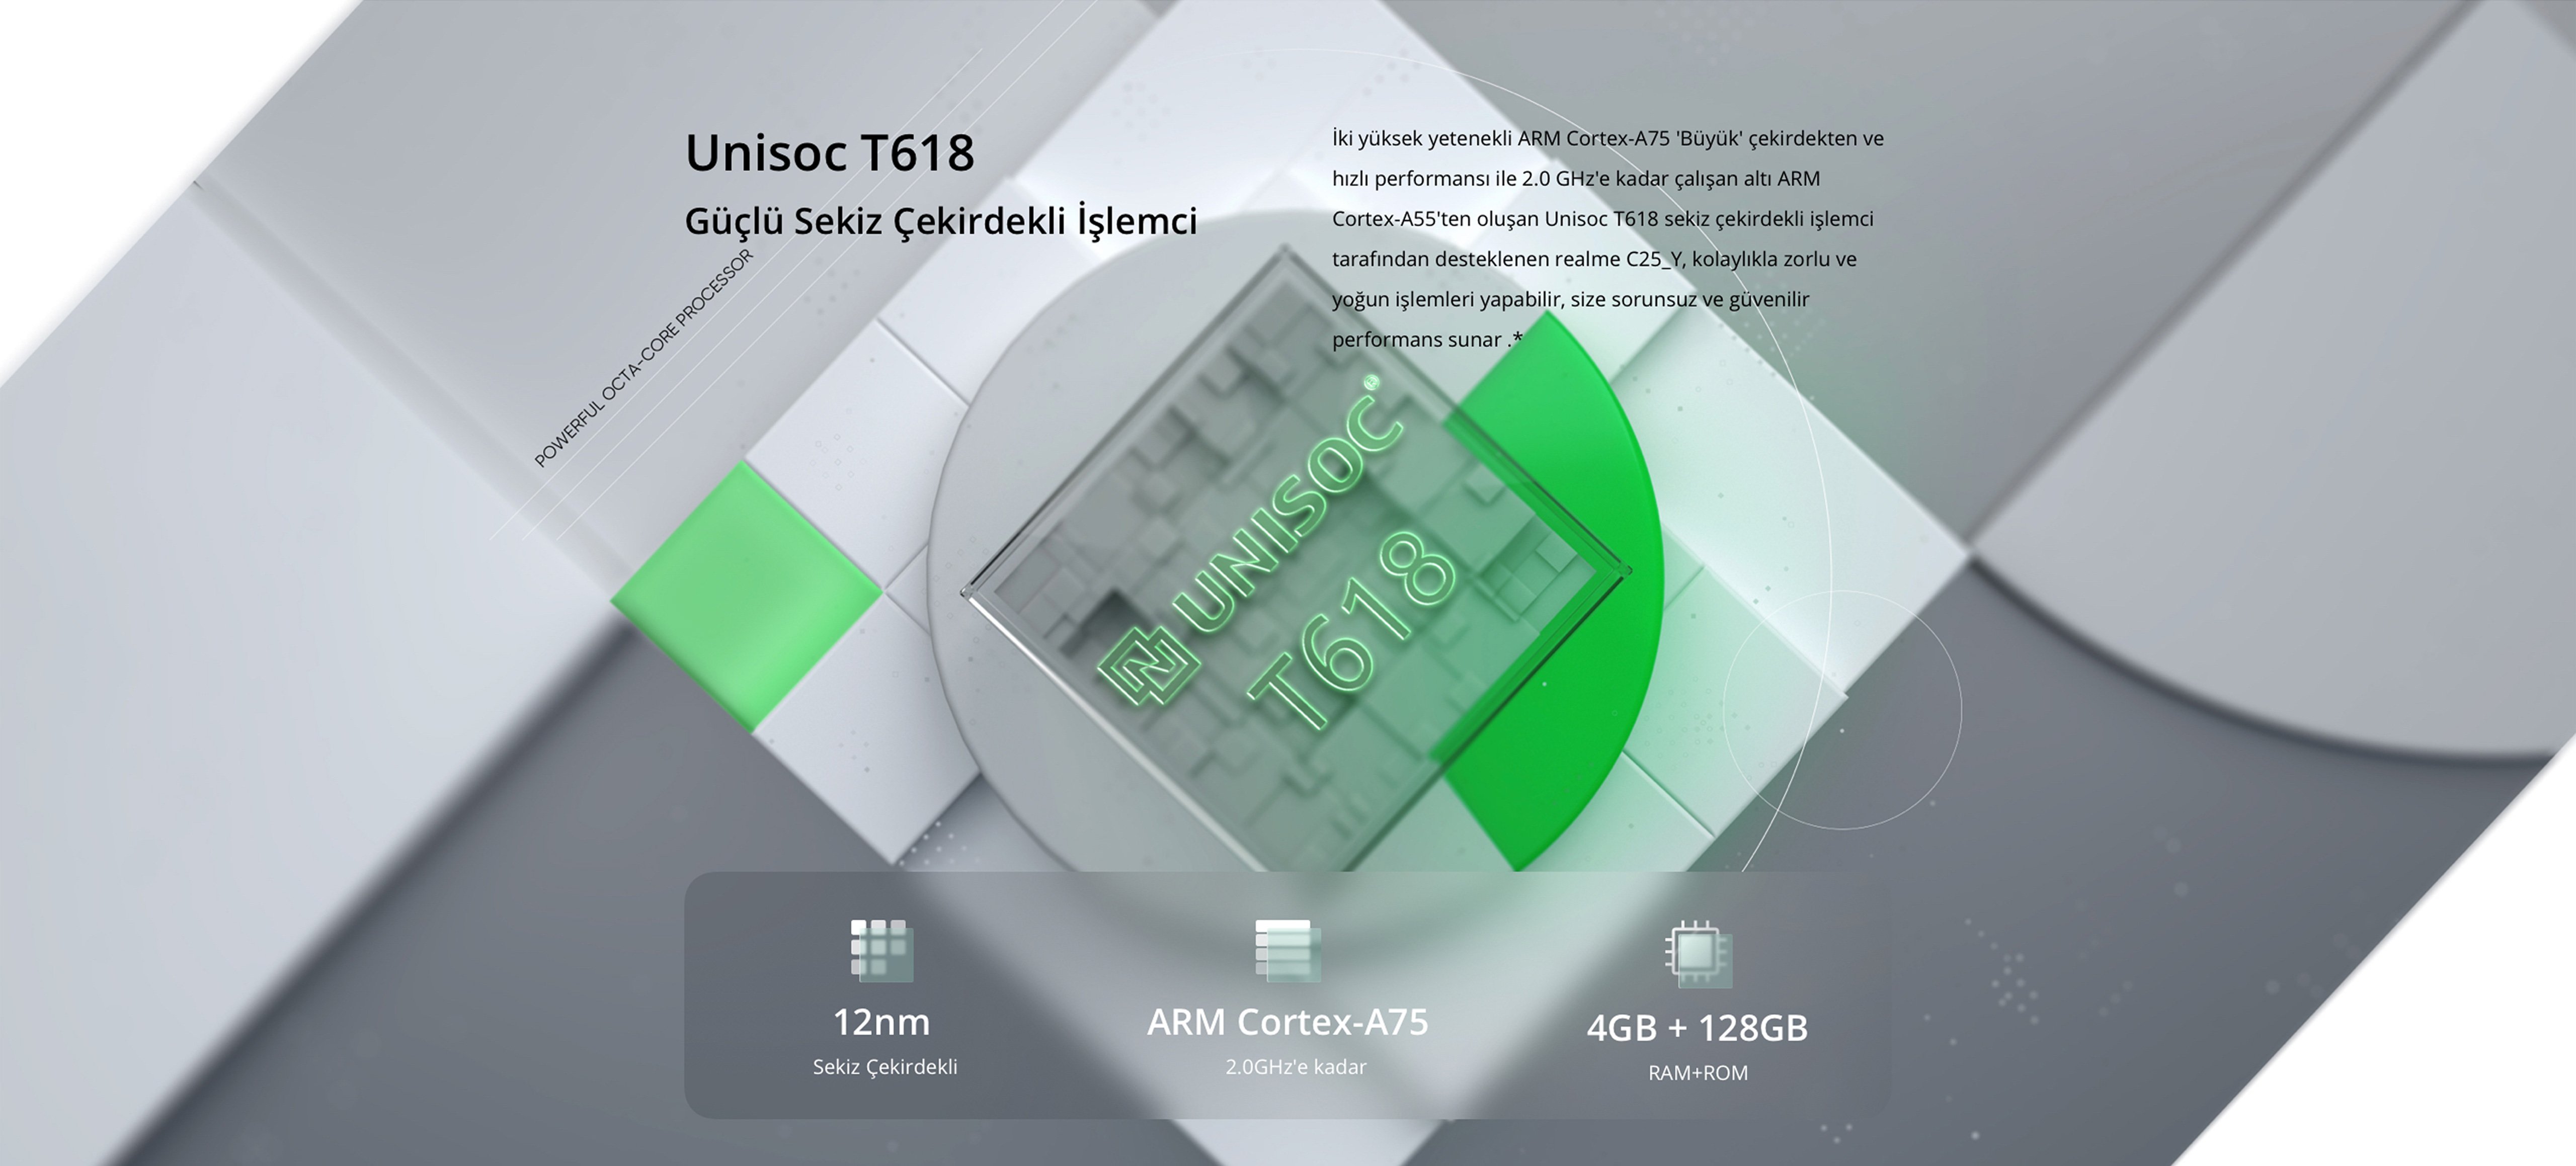 Unisoc T618 Güçlü Sekiz Çekirdekli İşlemci   İki yüksek yetenekli ARM Cortex-A75 "Büyük" çekirdekten ve hızlı performansı ile 2.0 GHz'e kadar çalışan altı ARM Cortex-A55'ten oluşan Unisoc T618 sekiz çekirdekli işlemci tarafından desteklenen Realme C25Y, kolaylıkla zorlu ve yoğun işlemleri yapabilir, size sorunsuz ve güvenilir performans sunar.